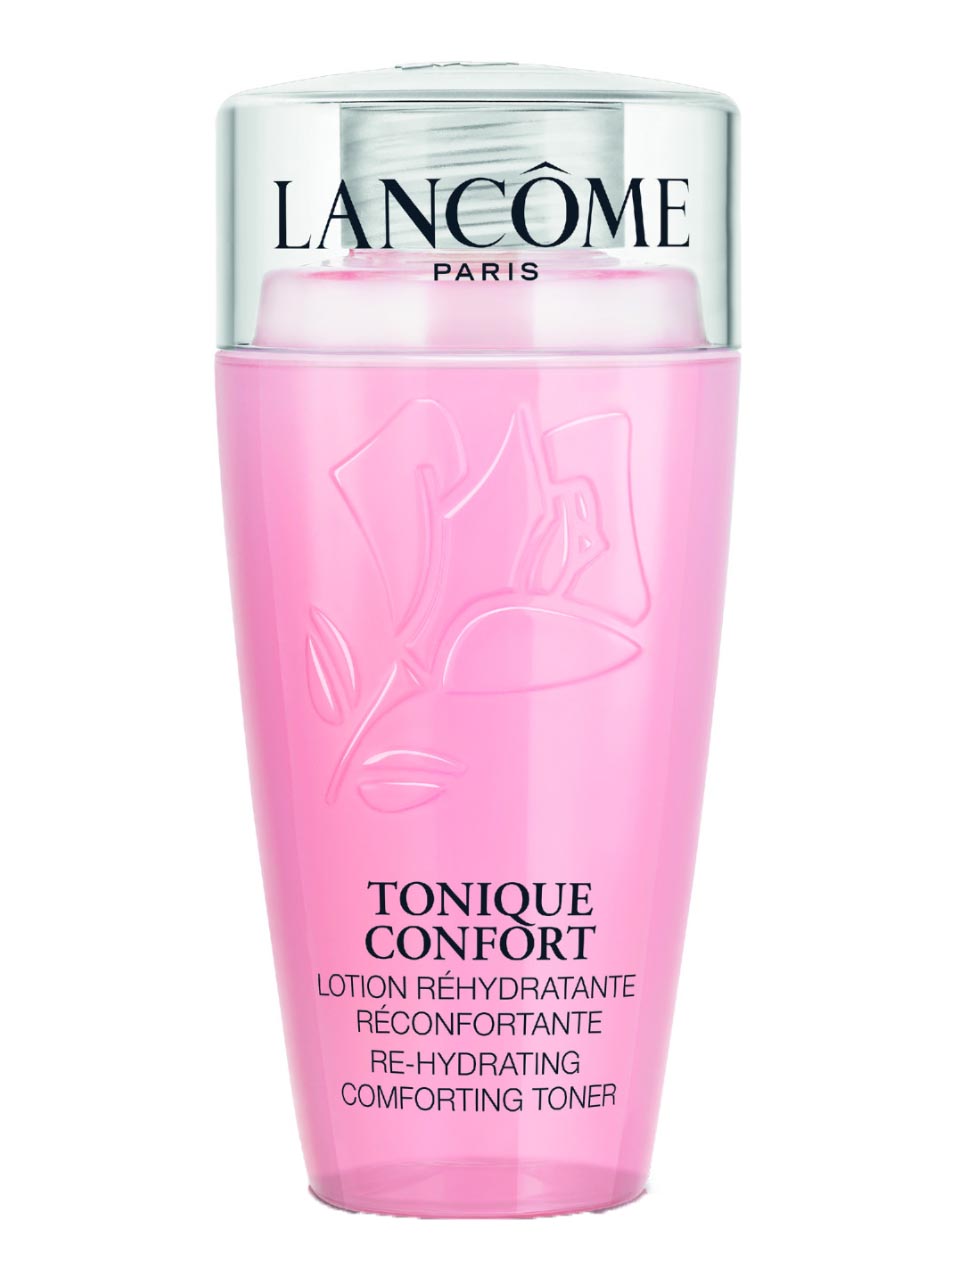 Lancôme Confort Conf Tonique 75 ml null - onesize - 1